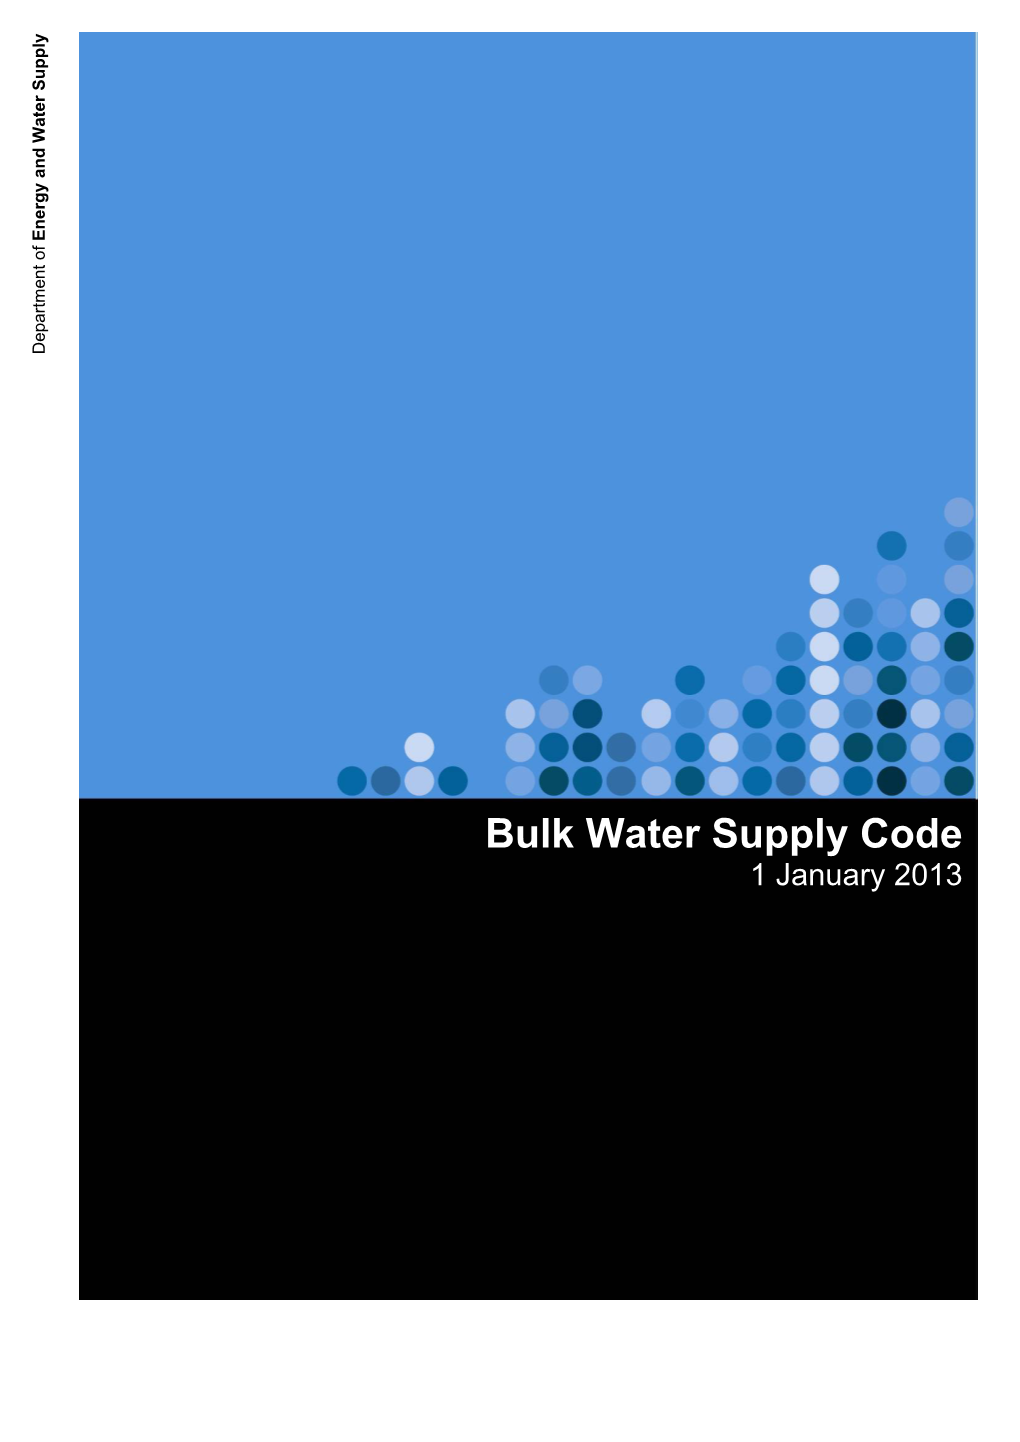 Bulk Water Supply Code 1 January 2013